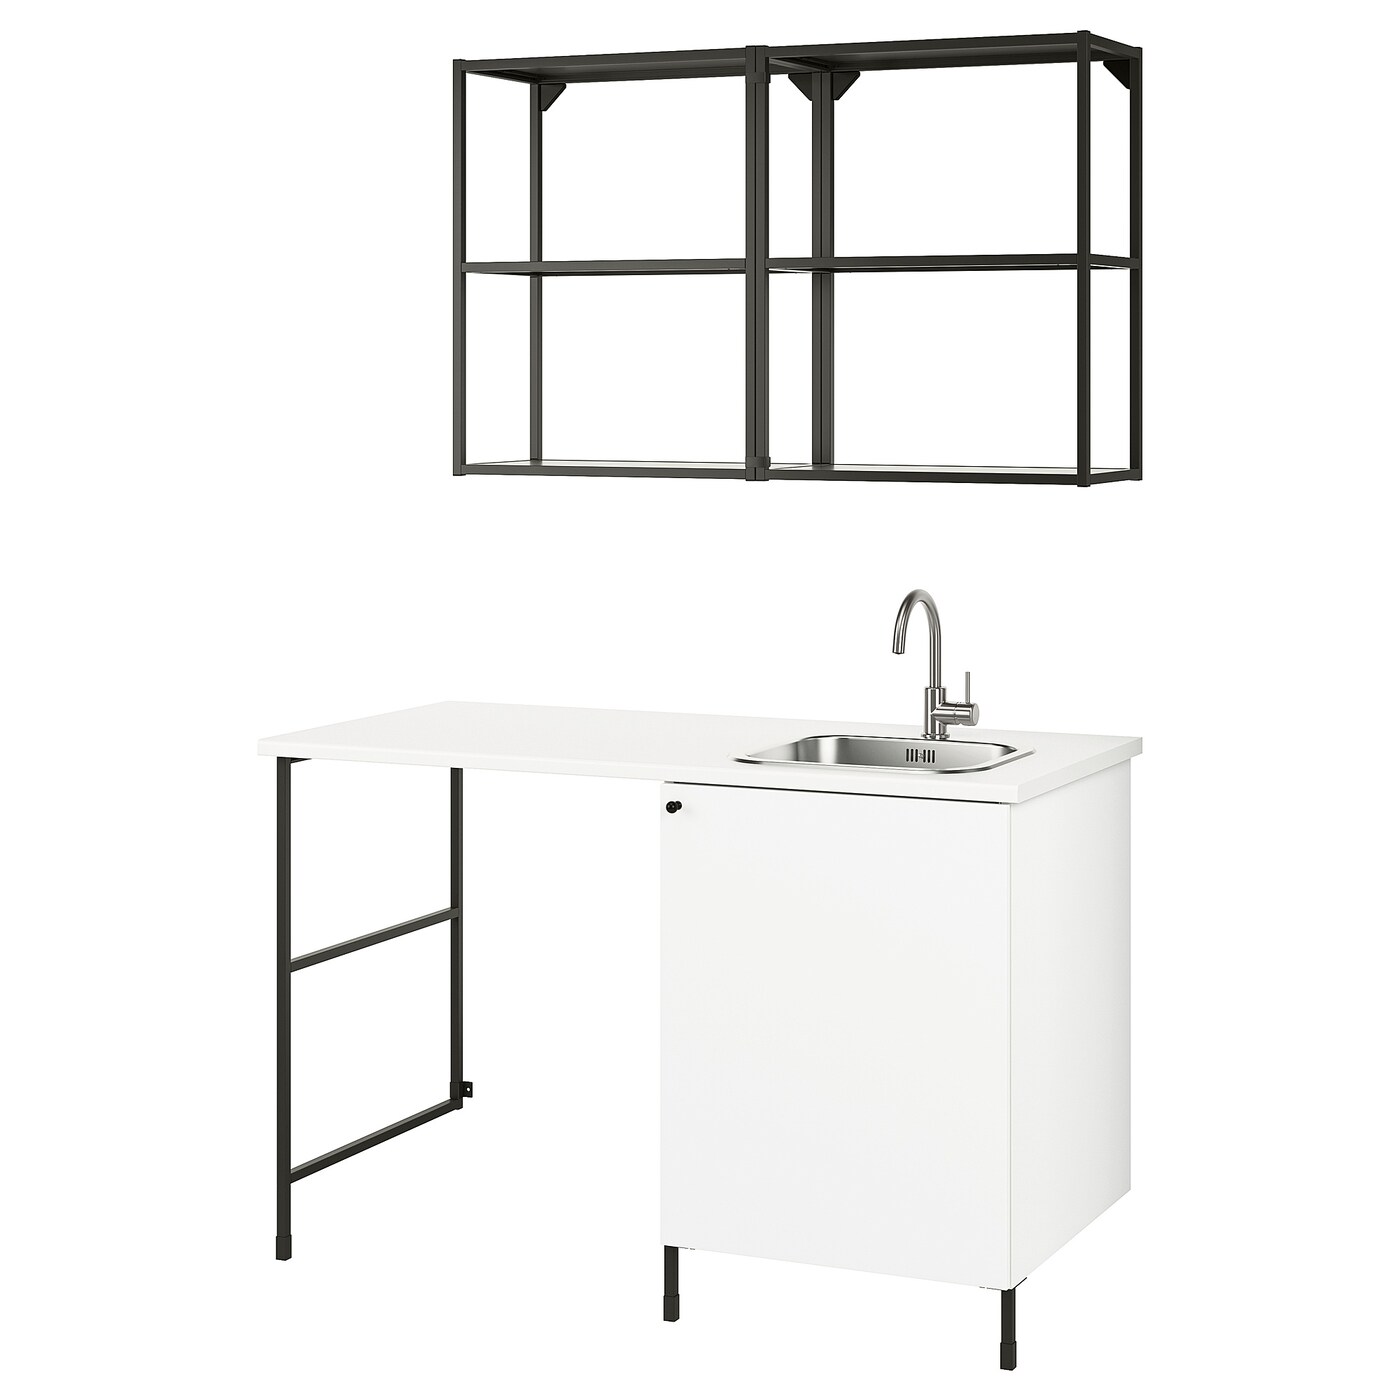 Комбинация шкафов для прачечной и кухни - ENHET  IKEA/ ЭНХЕТ ИКЕА, 139x63,5x87,5 см, белый/черный